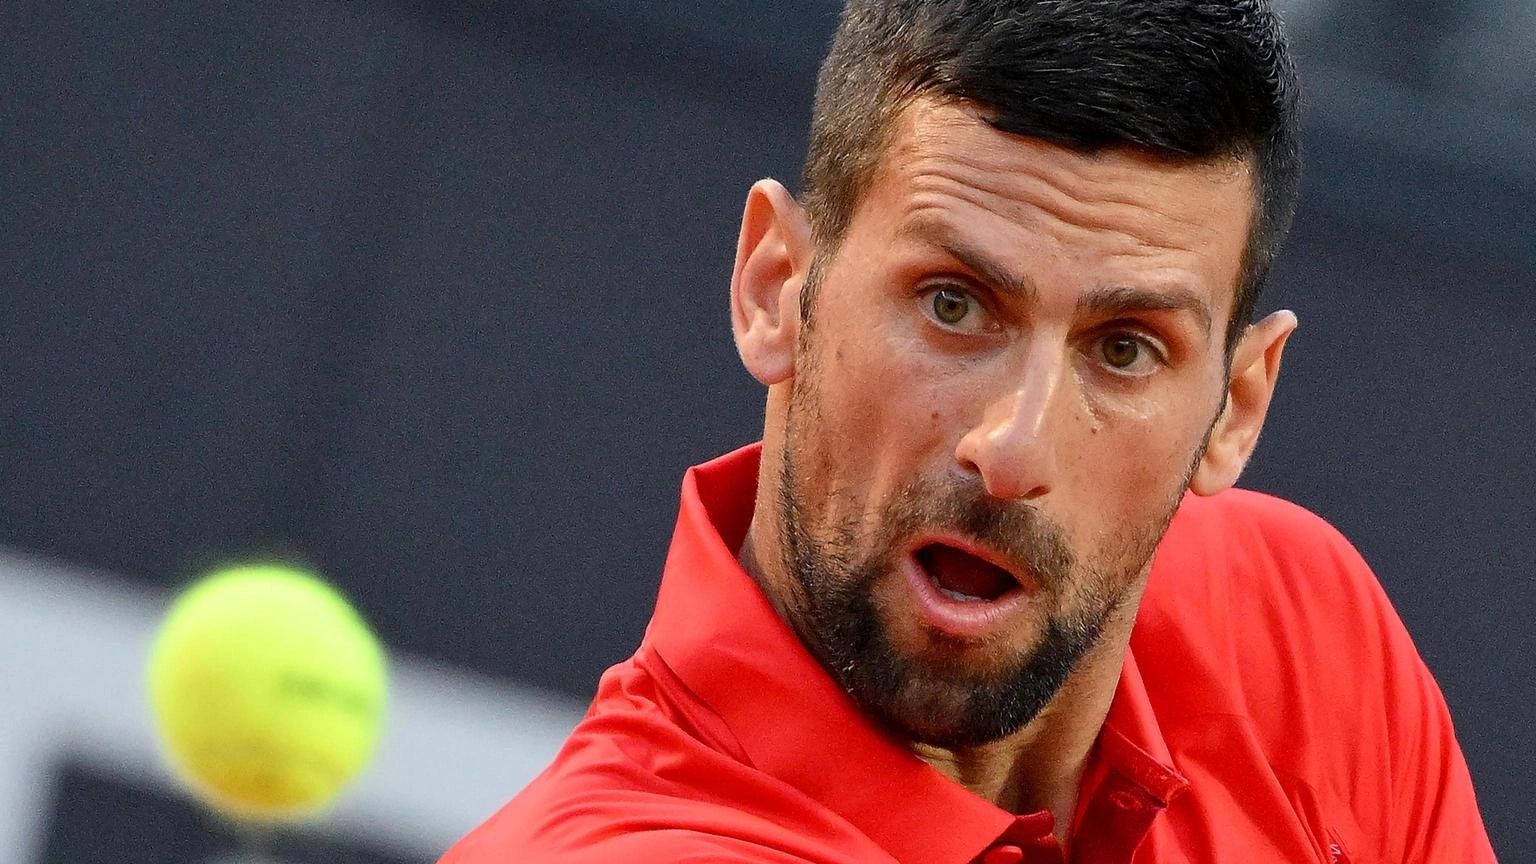 Internazionali: borraccia in testa, lieve ferita per Djokovic